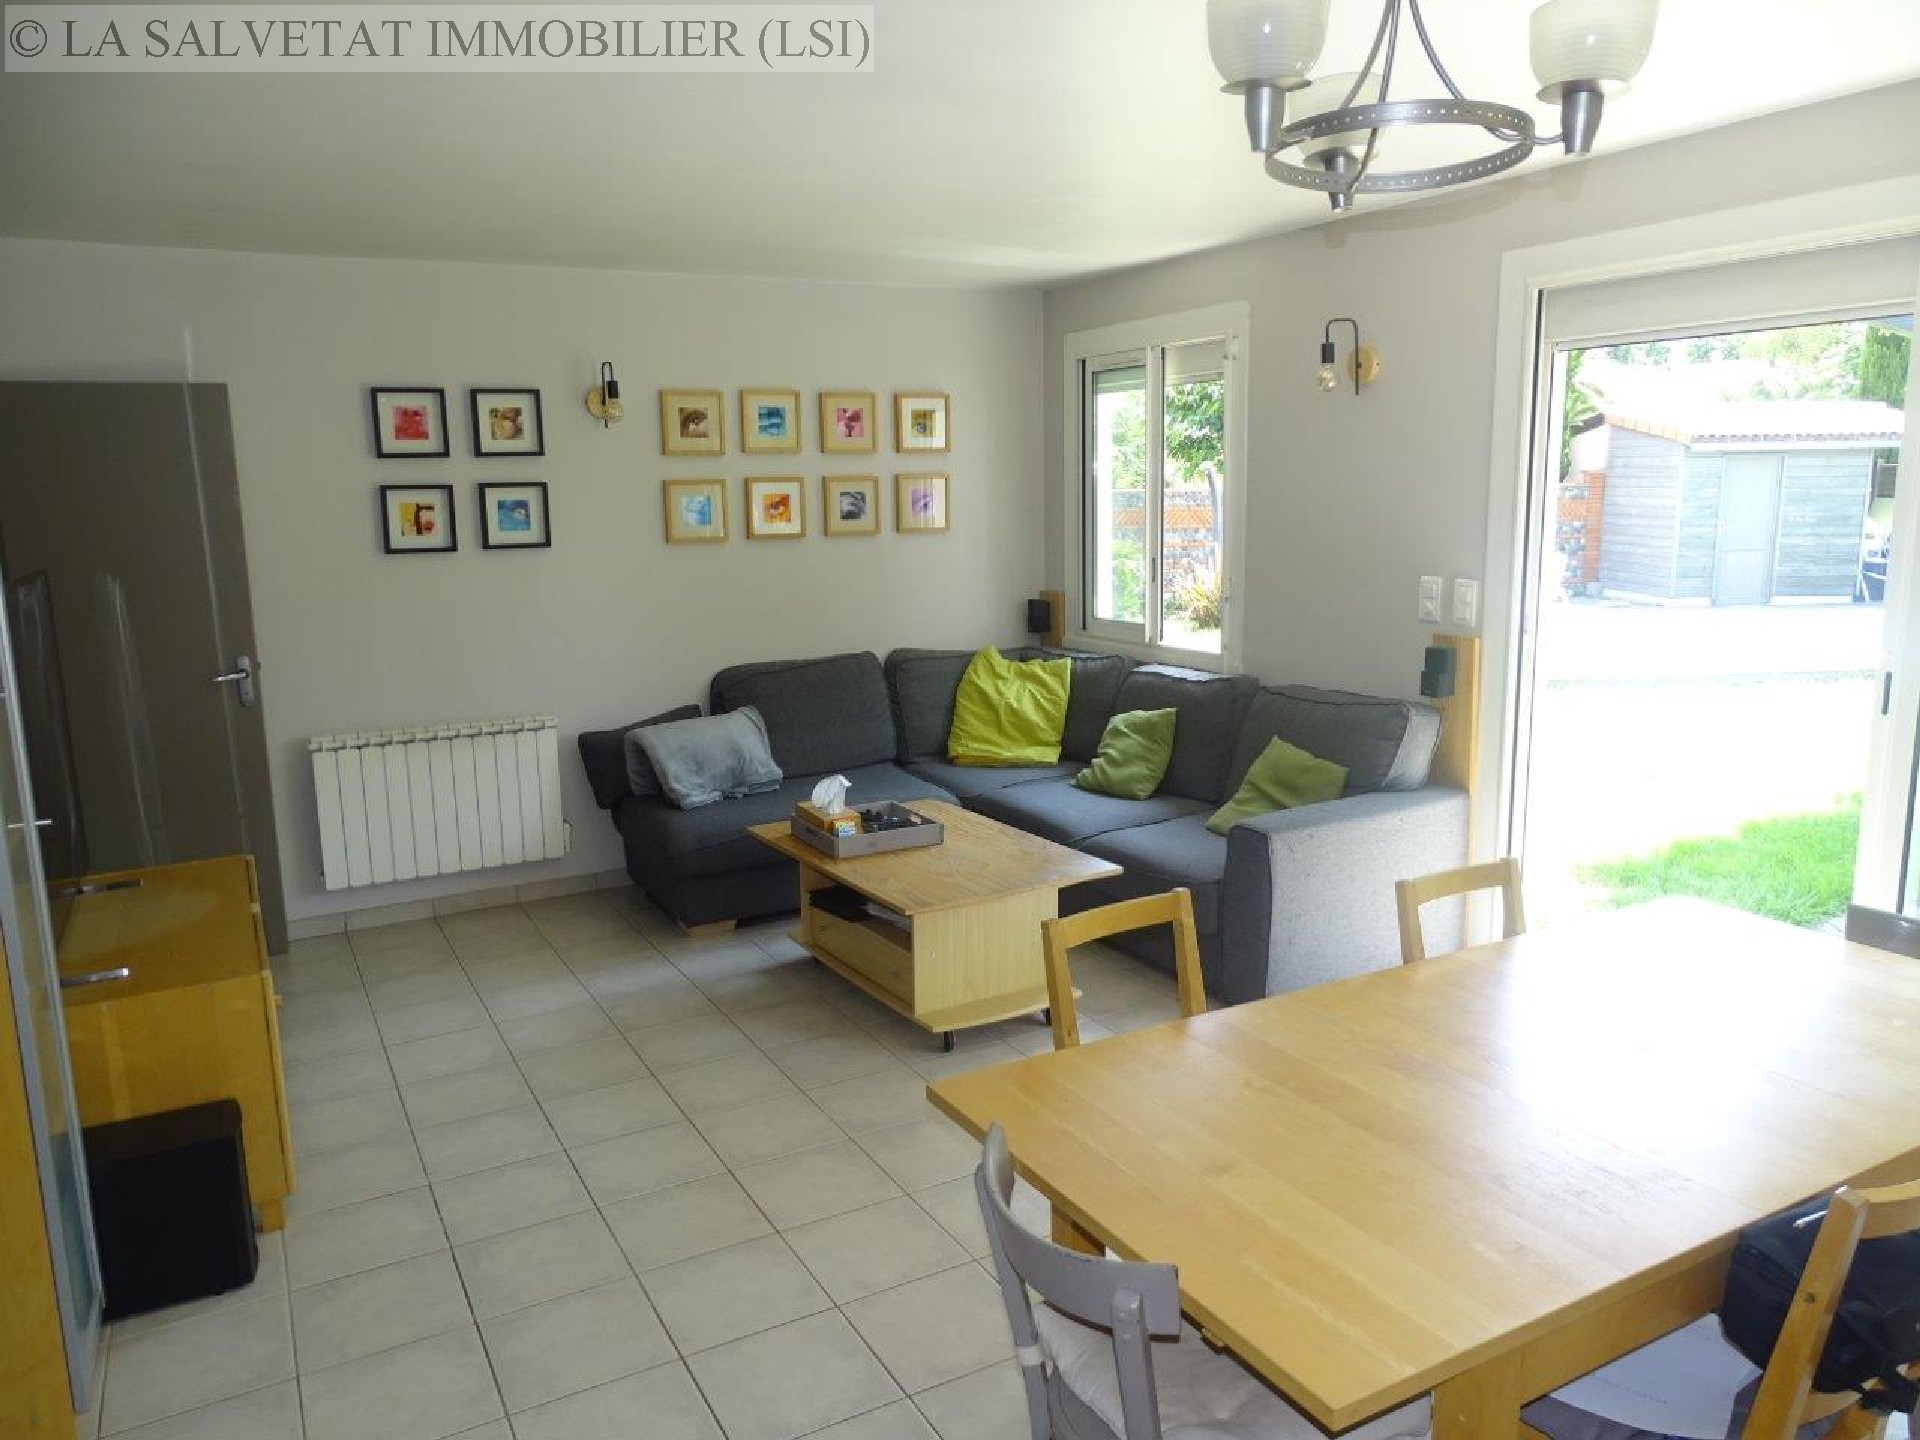 Vente maison-villa - PLAISANCE DU TOUCH<br>132 m², 6 pièces